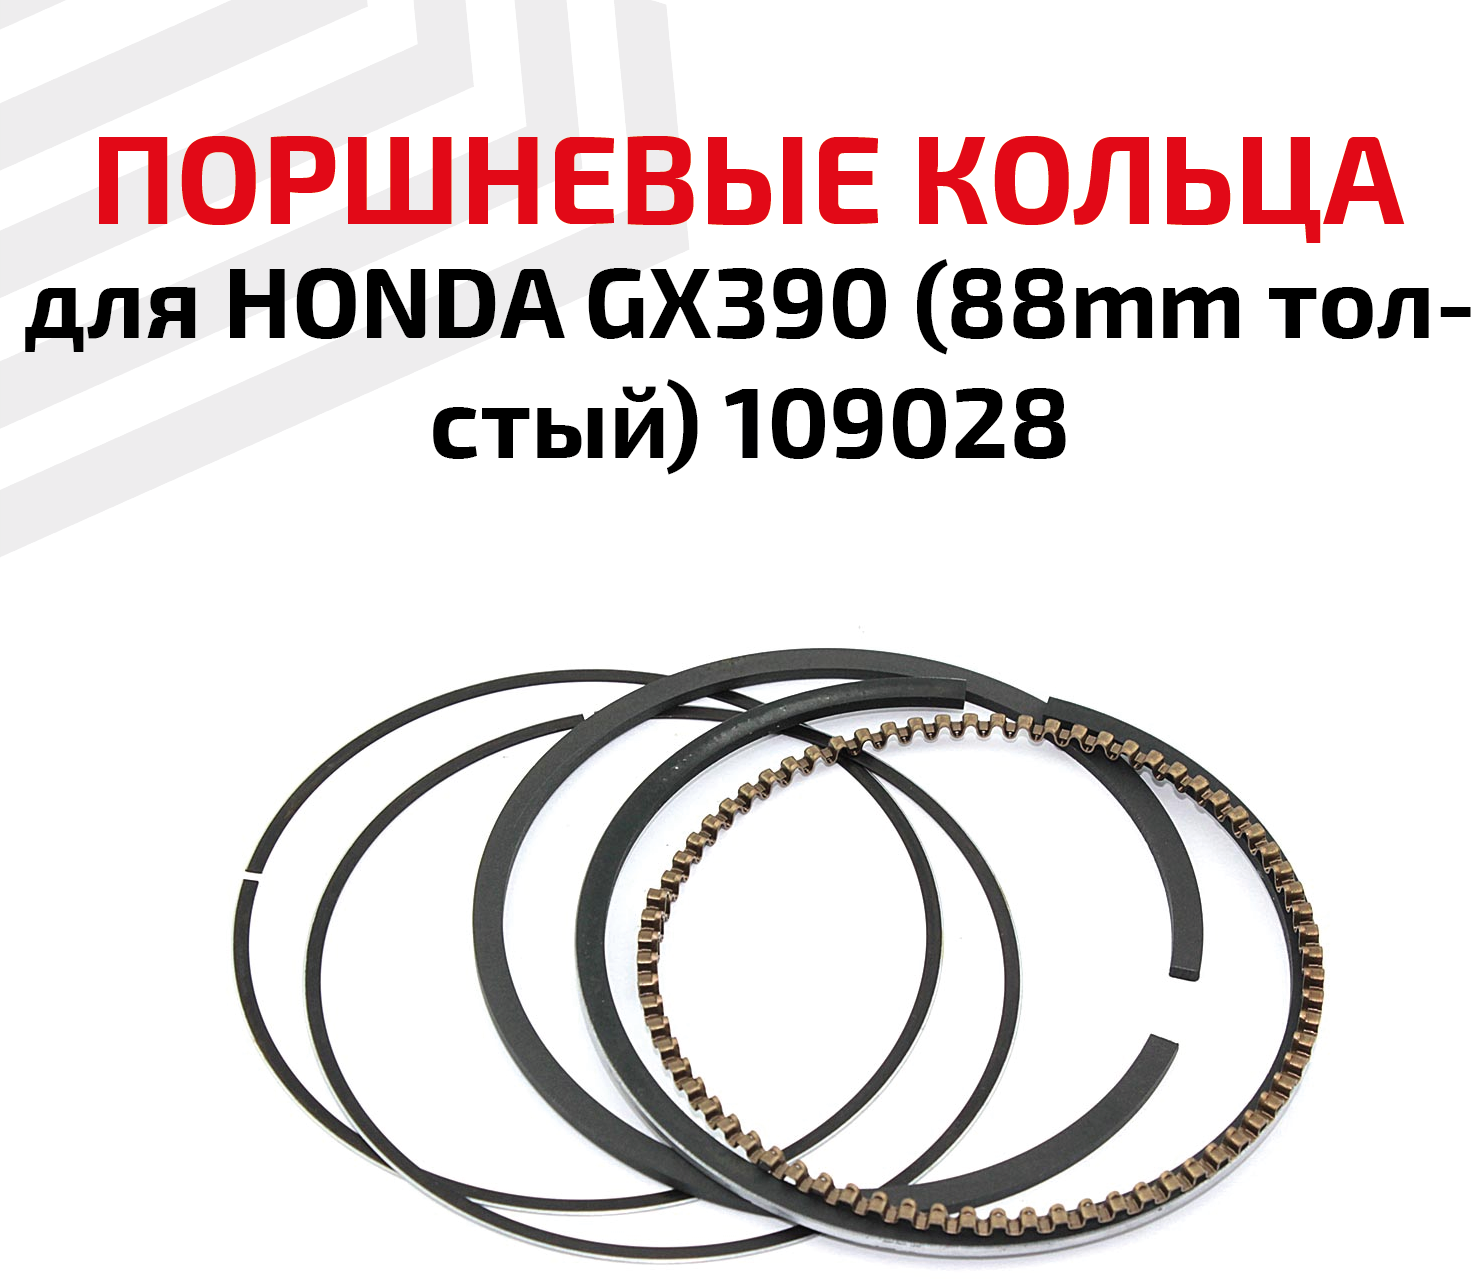 Кольца поршневые для бензоинструмента Honda GX390 (88мм толстый) 109028